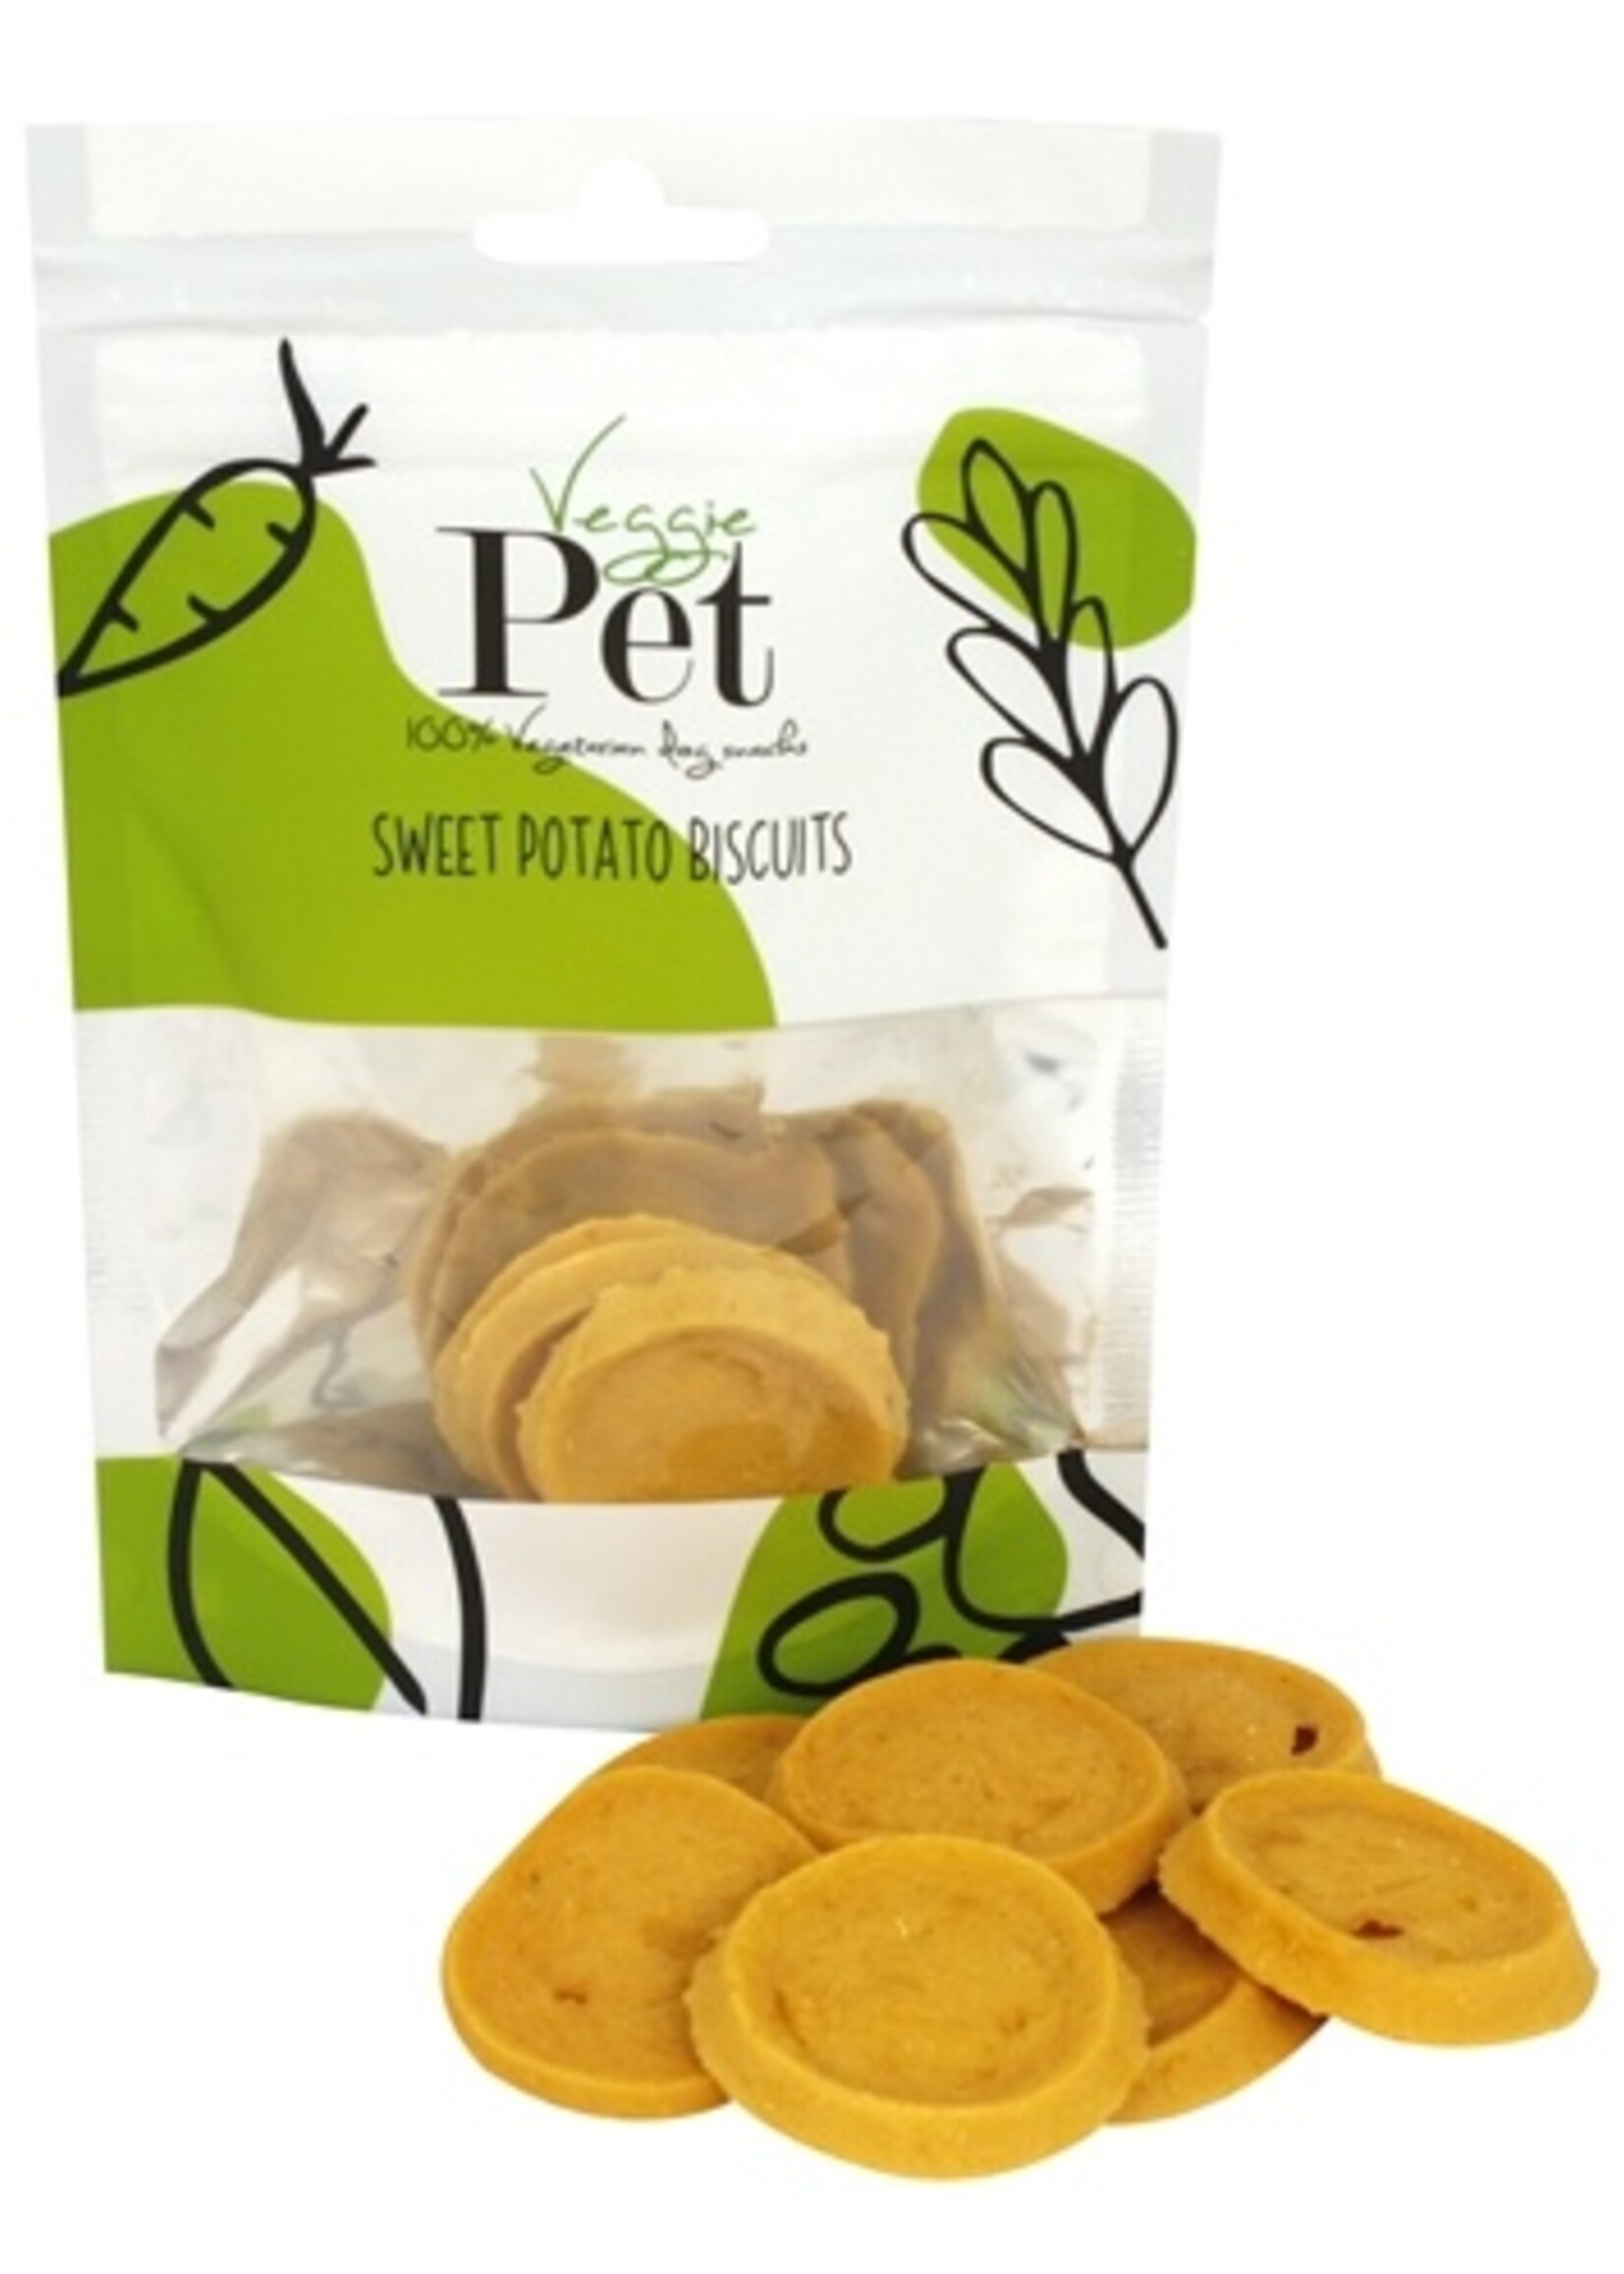 Veggie pet Veggie pet sweet potato biscuits